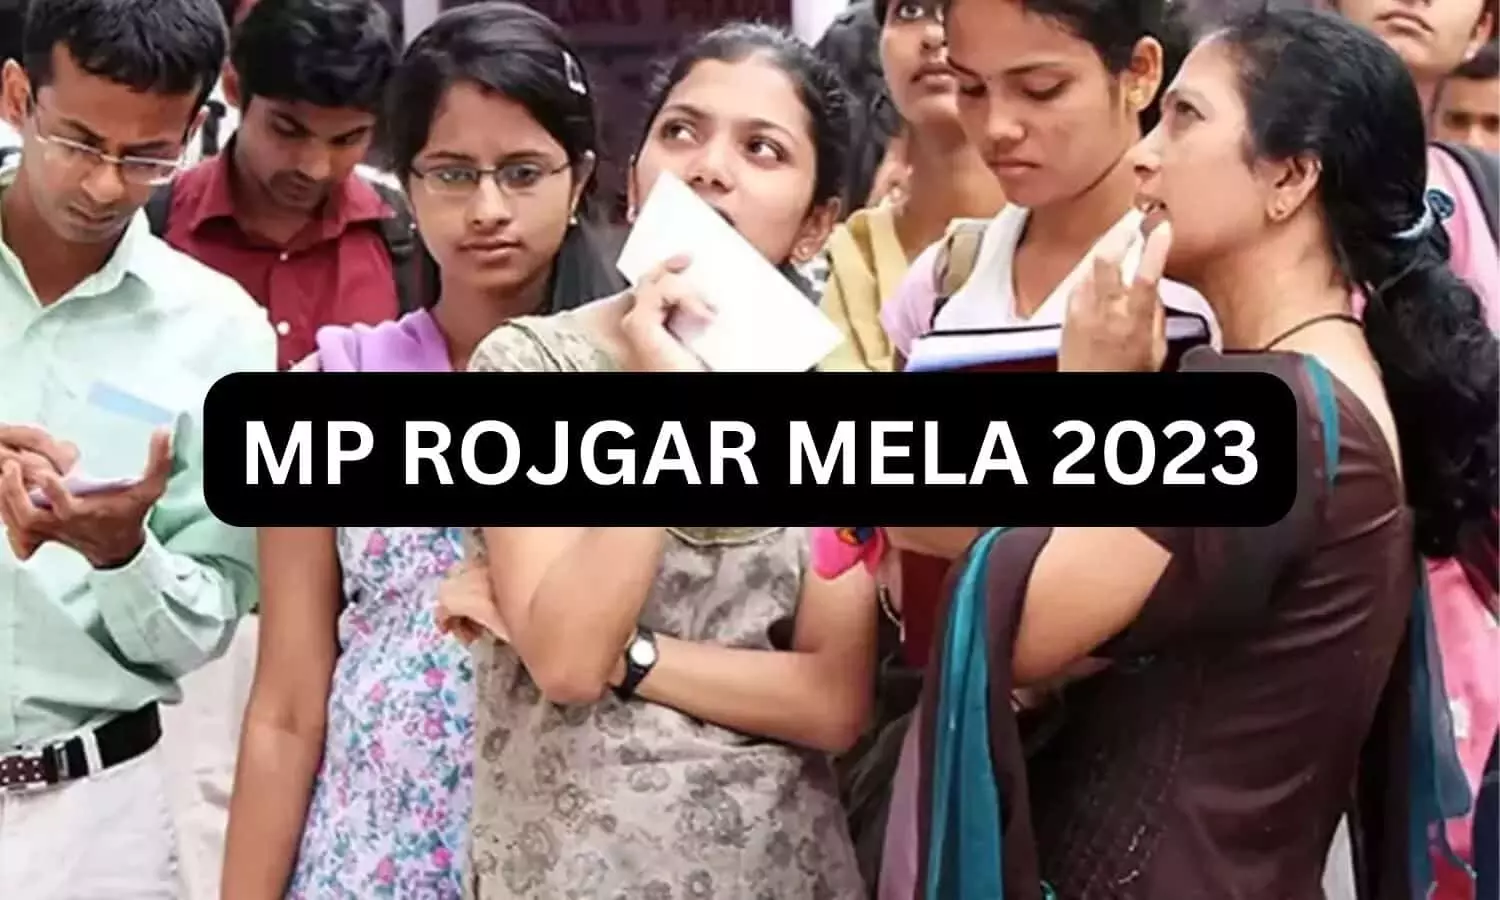 MP ROJGAR MELA 2023: एमपी में रोजगार मेले का आयोजन, 300 युवाओ को मिलेगी नौकरी, कई बड़ी कंपनियां होंगी शामिल